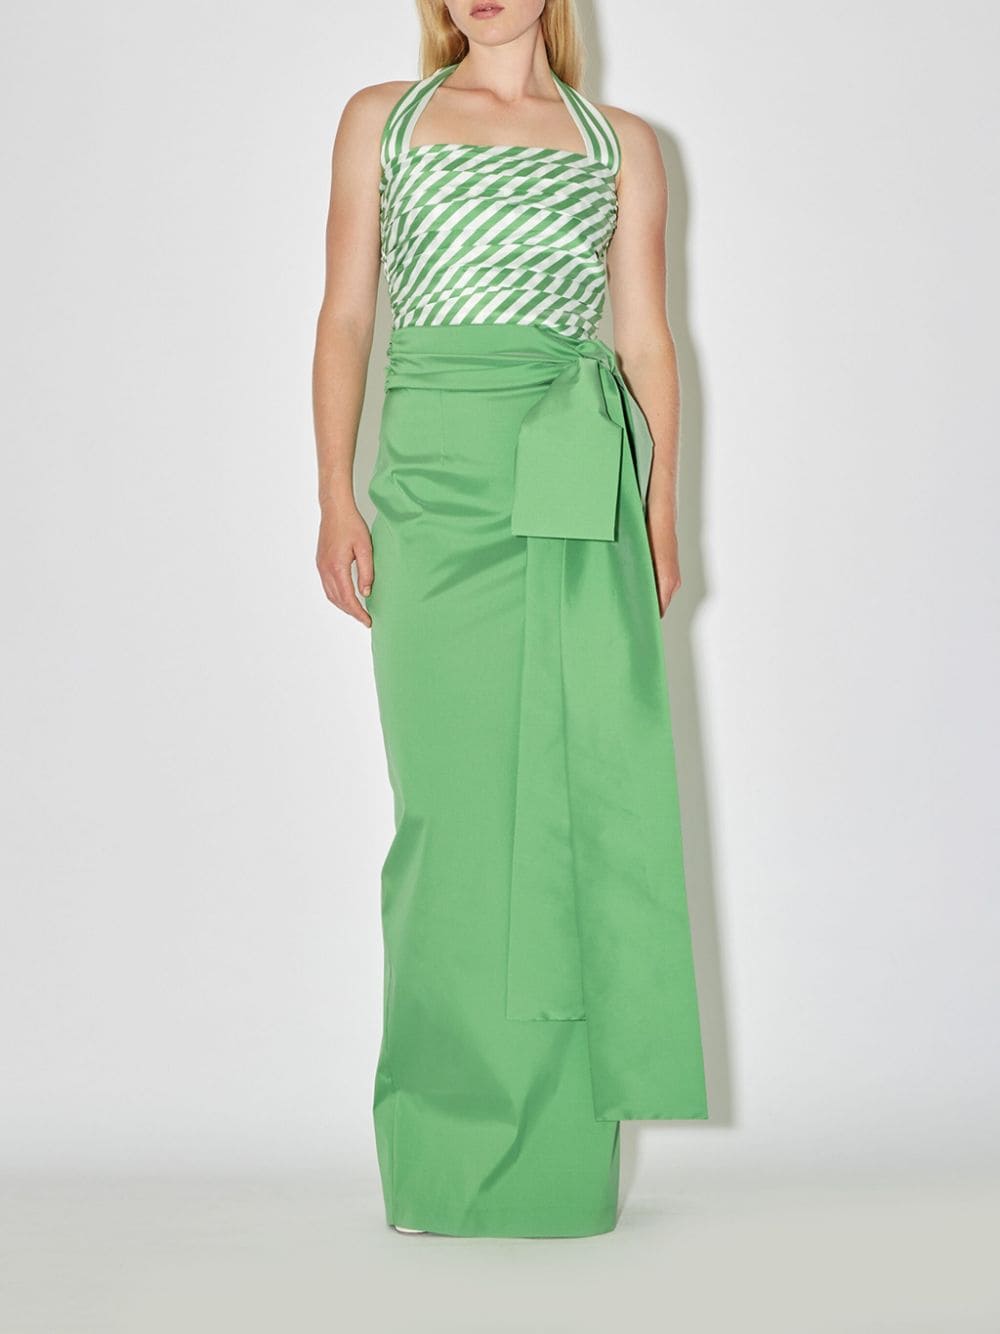 Bernadette Bernard Taffeta Skirt In Green